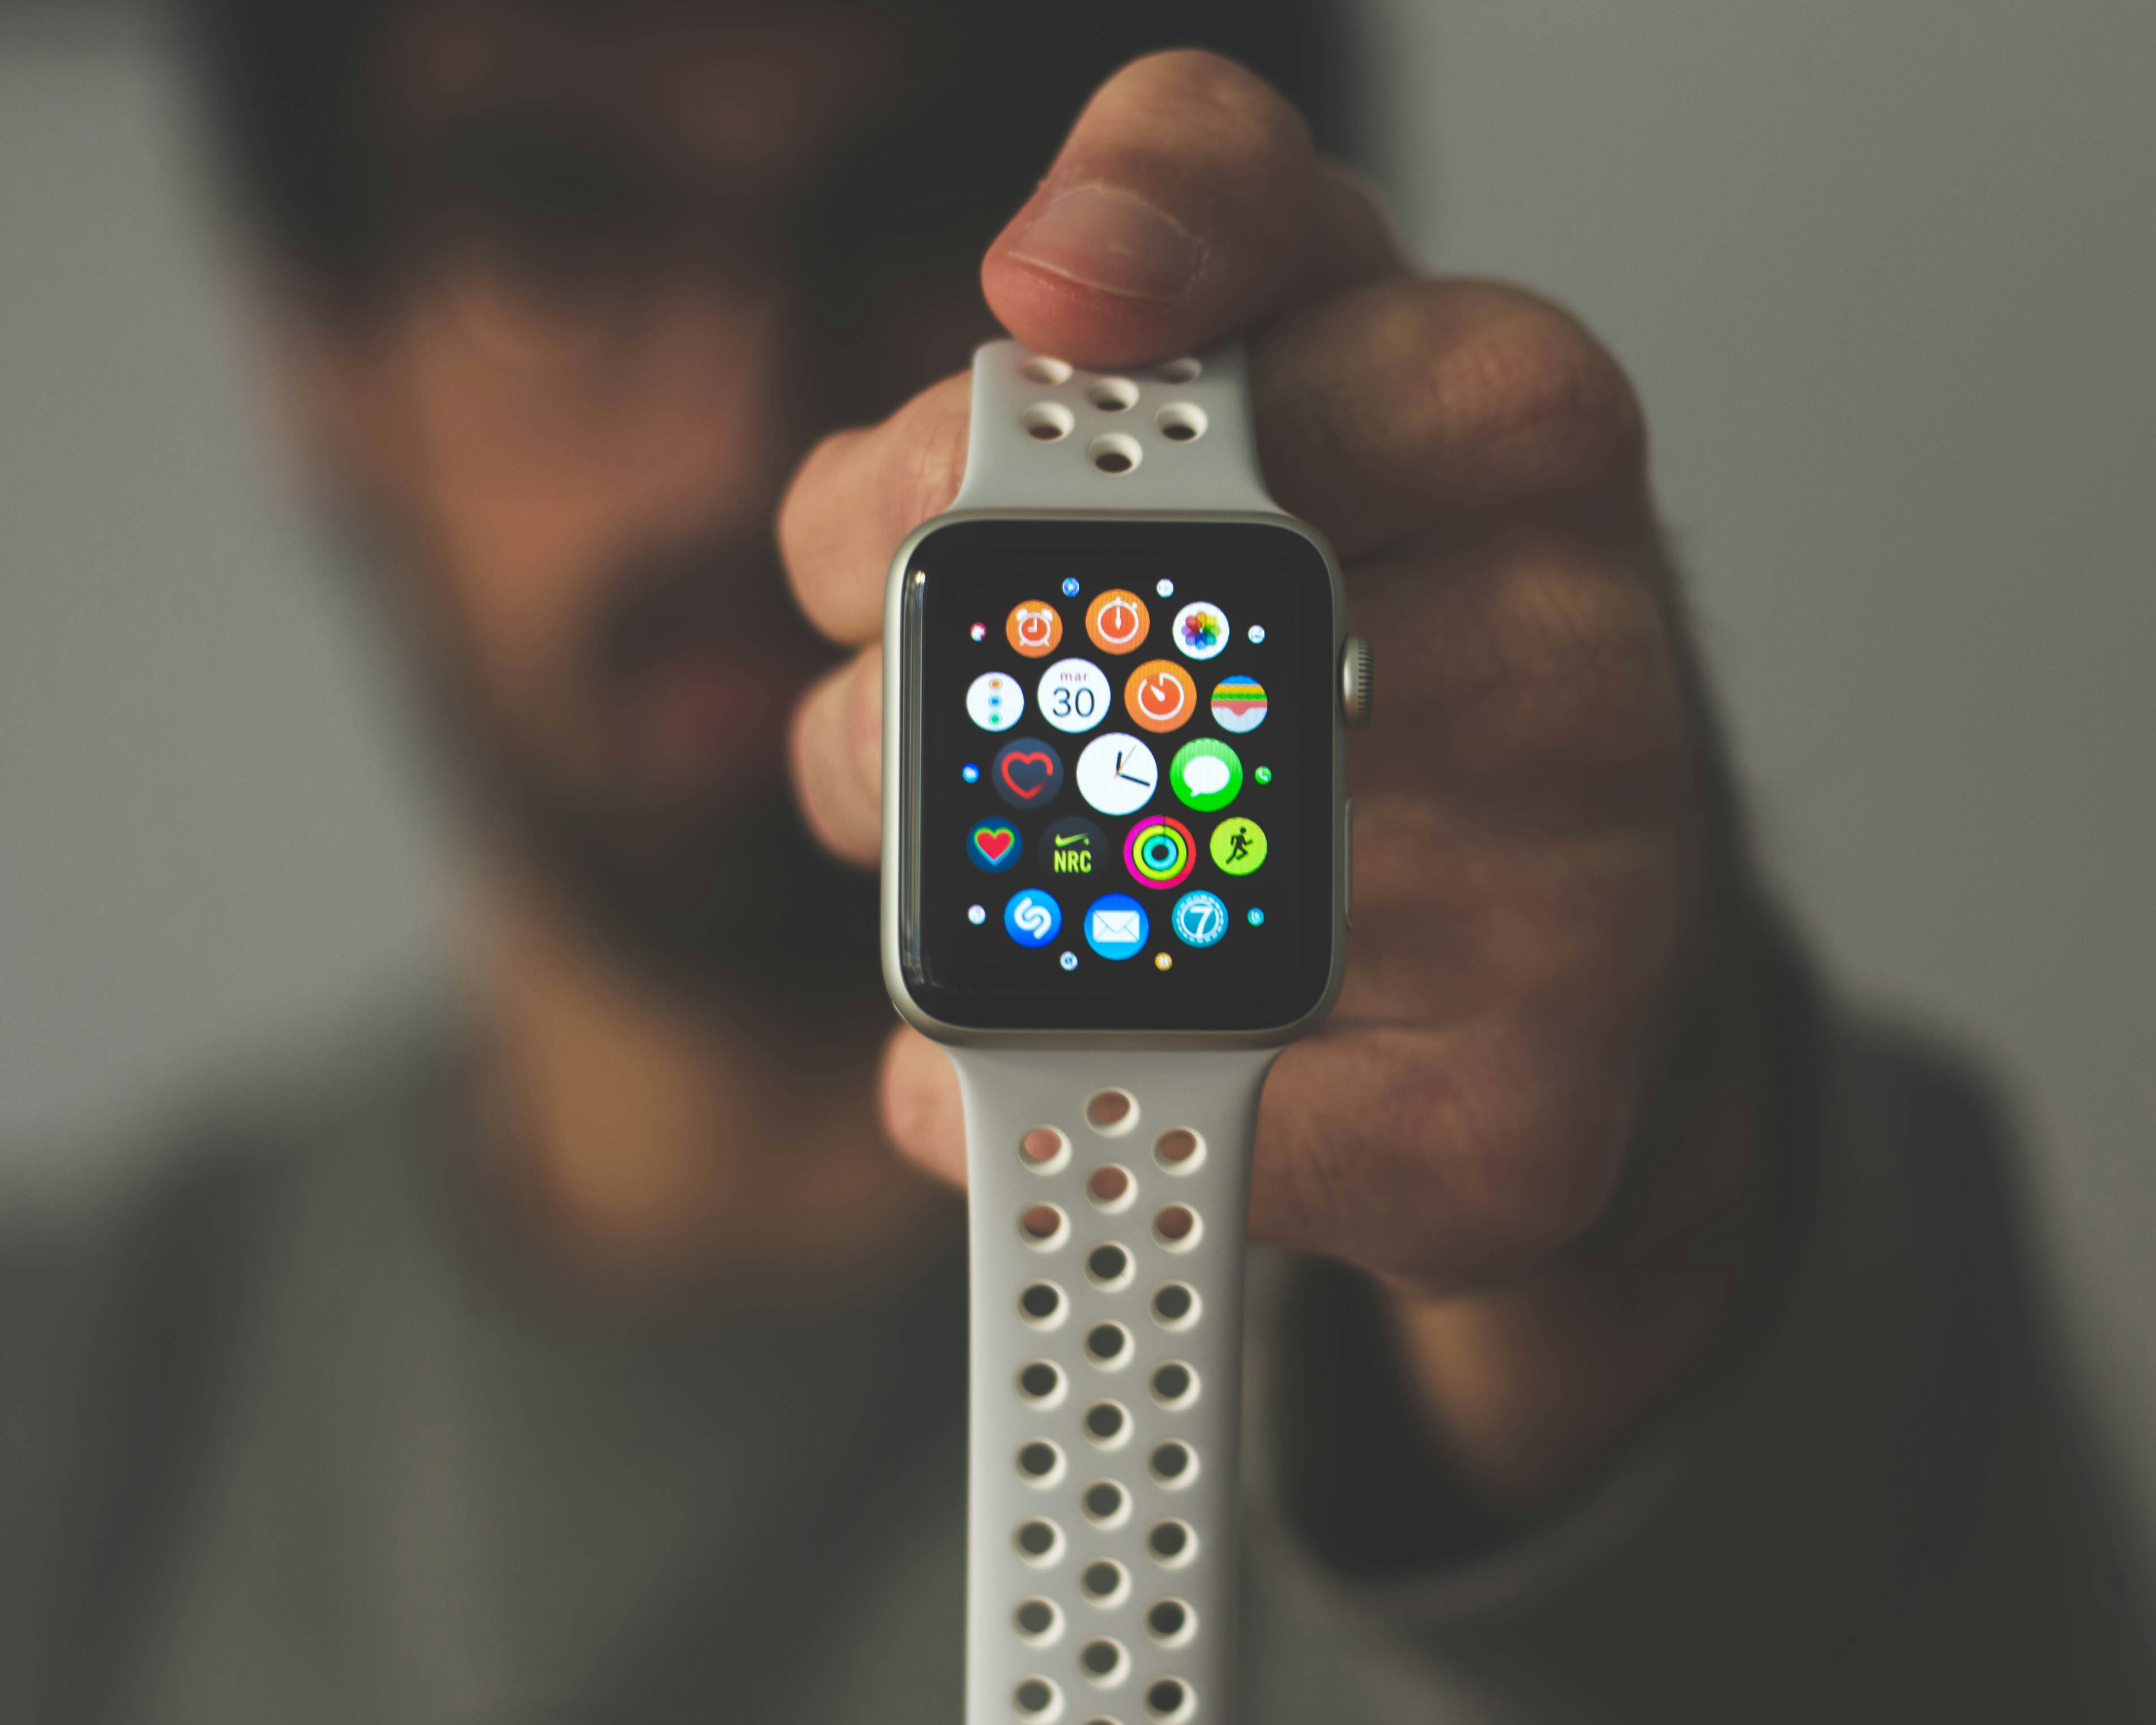 เหตุใดฉันจึงควรซื้อ Apple Watch พร้อม e-SIM - ภาพข่าวบน imei.info